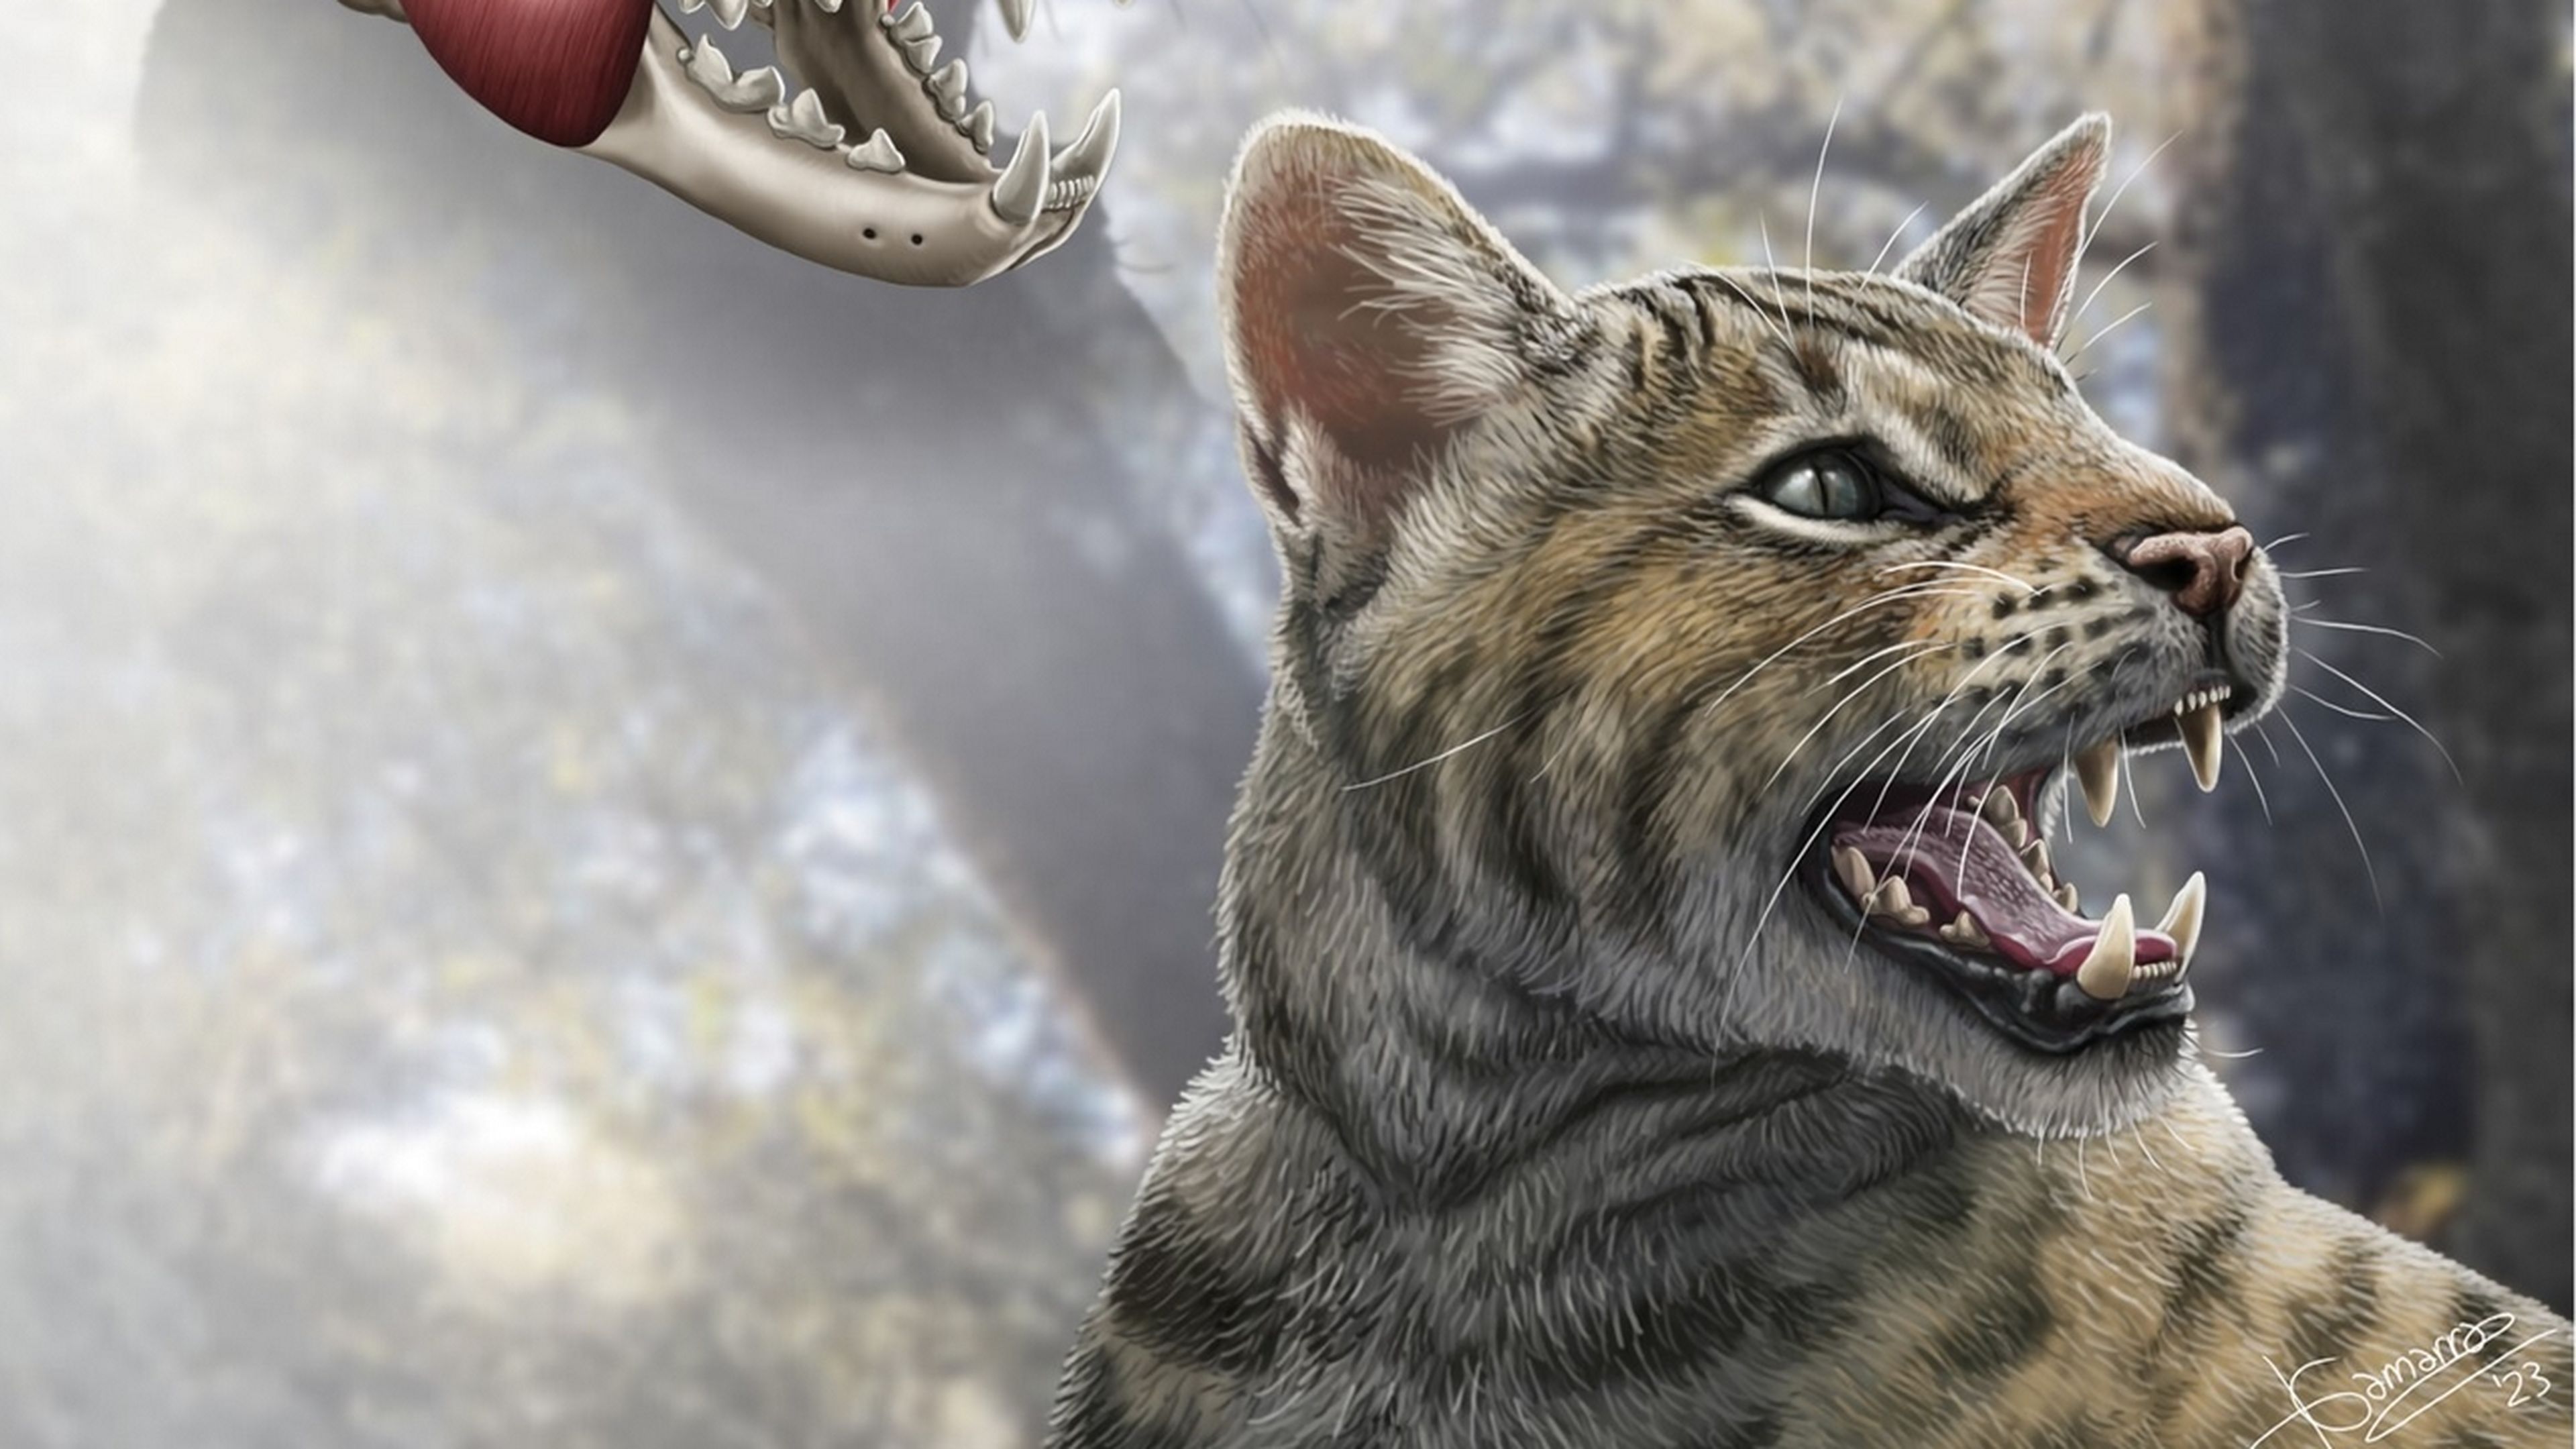 Descubren en Madrid una nueva especie de gato prehistórico de hace 15 millones de años